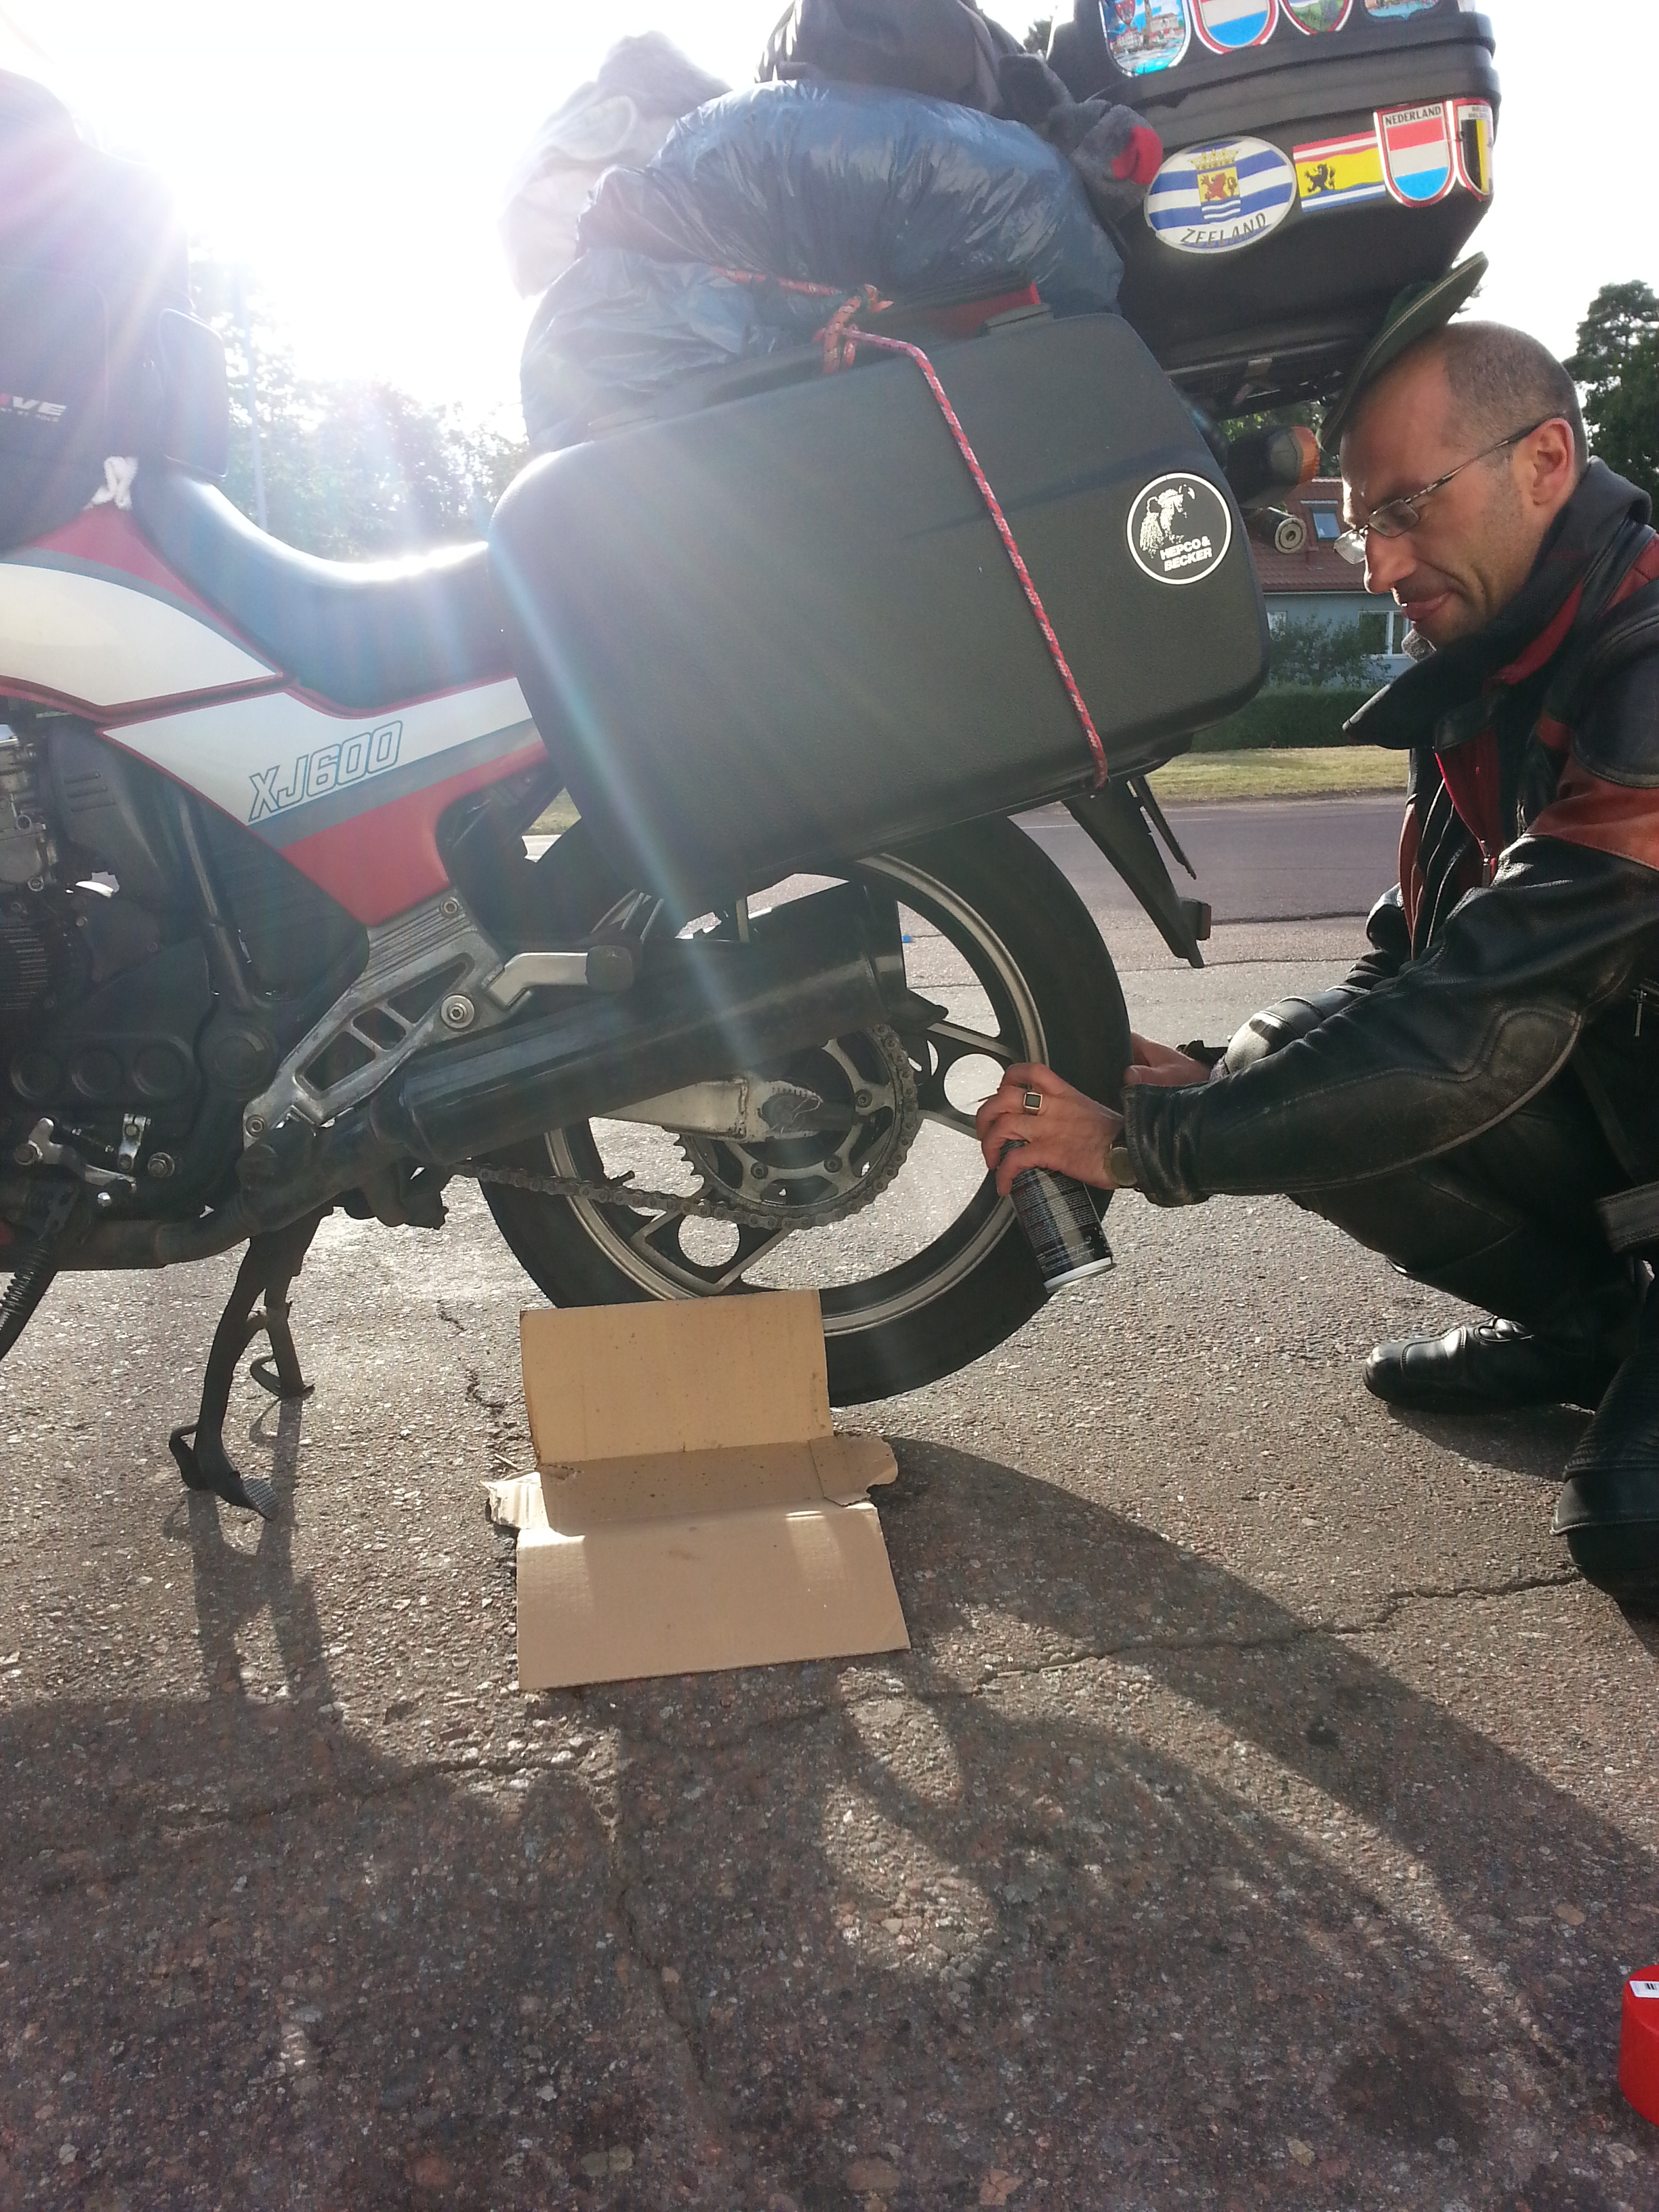 Arreglando la moto